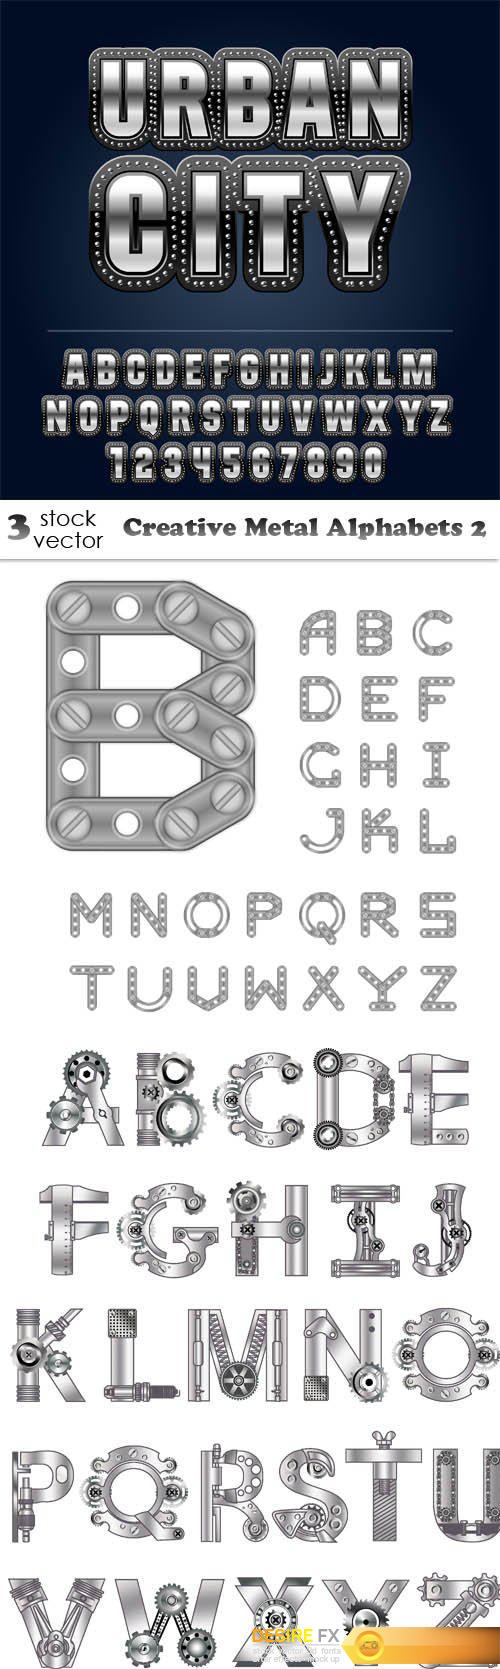 Vectors - Creative Metal Alphabets 2